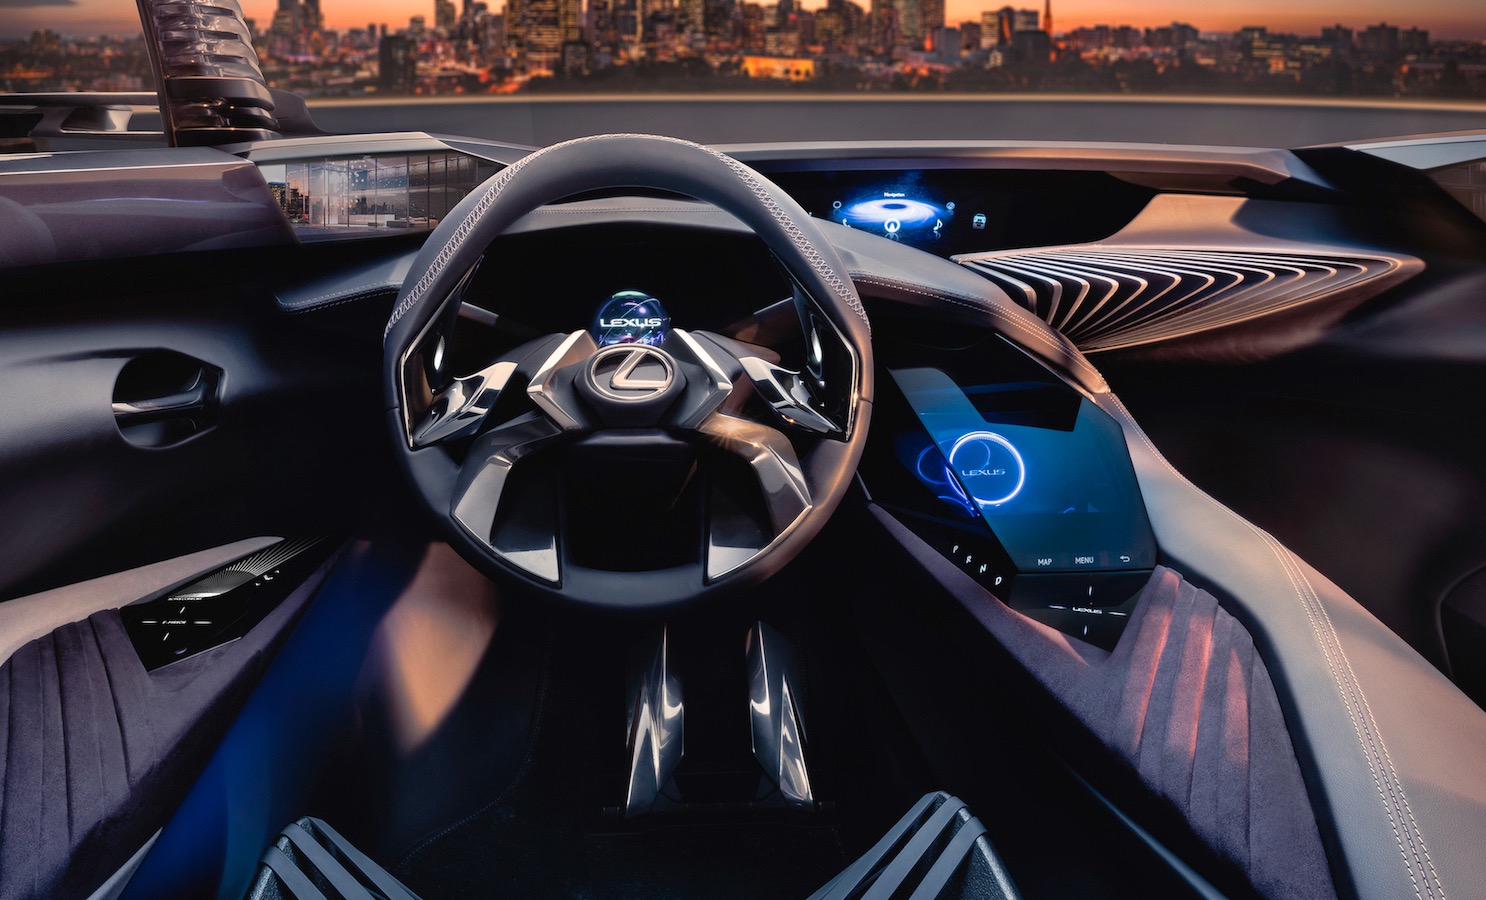 Lexus UX interior teased, shows very futuristic design